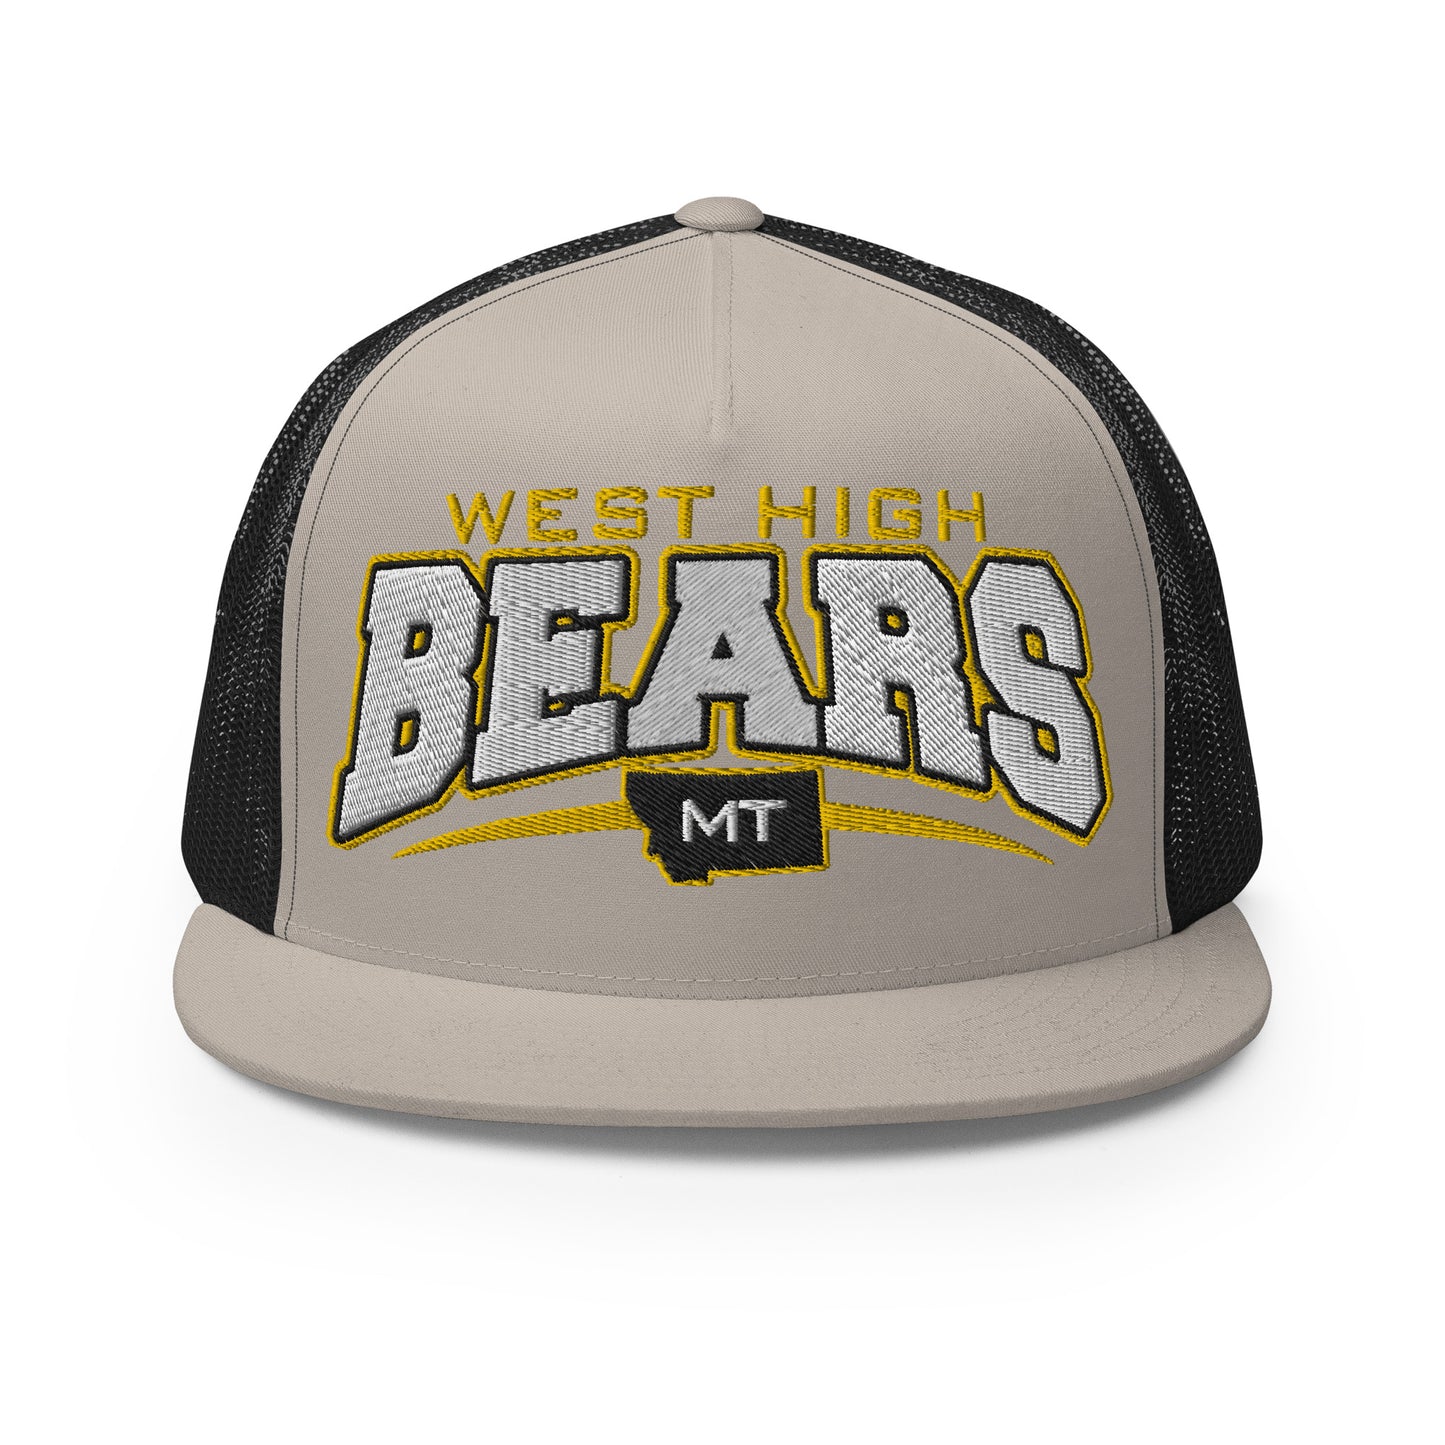 BWHS Trucker Cap - Golden Bears